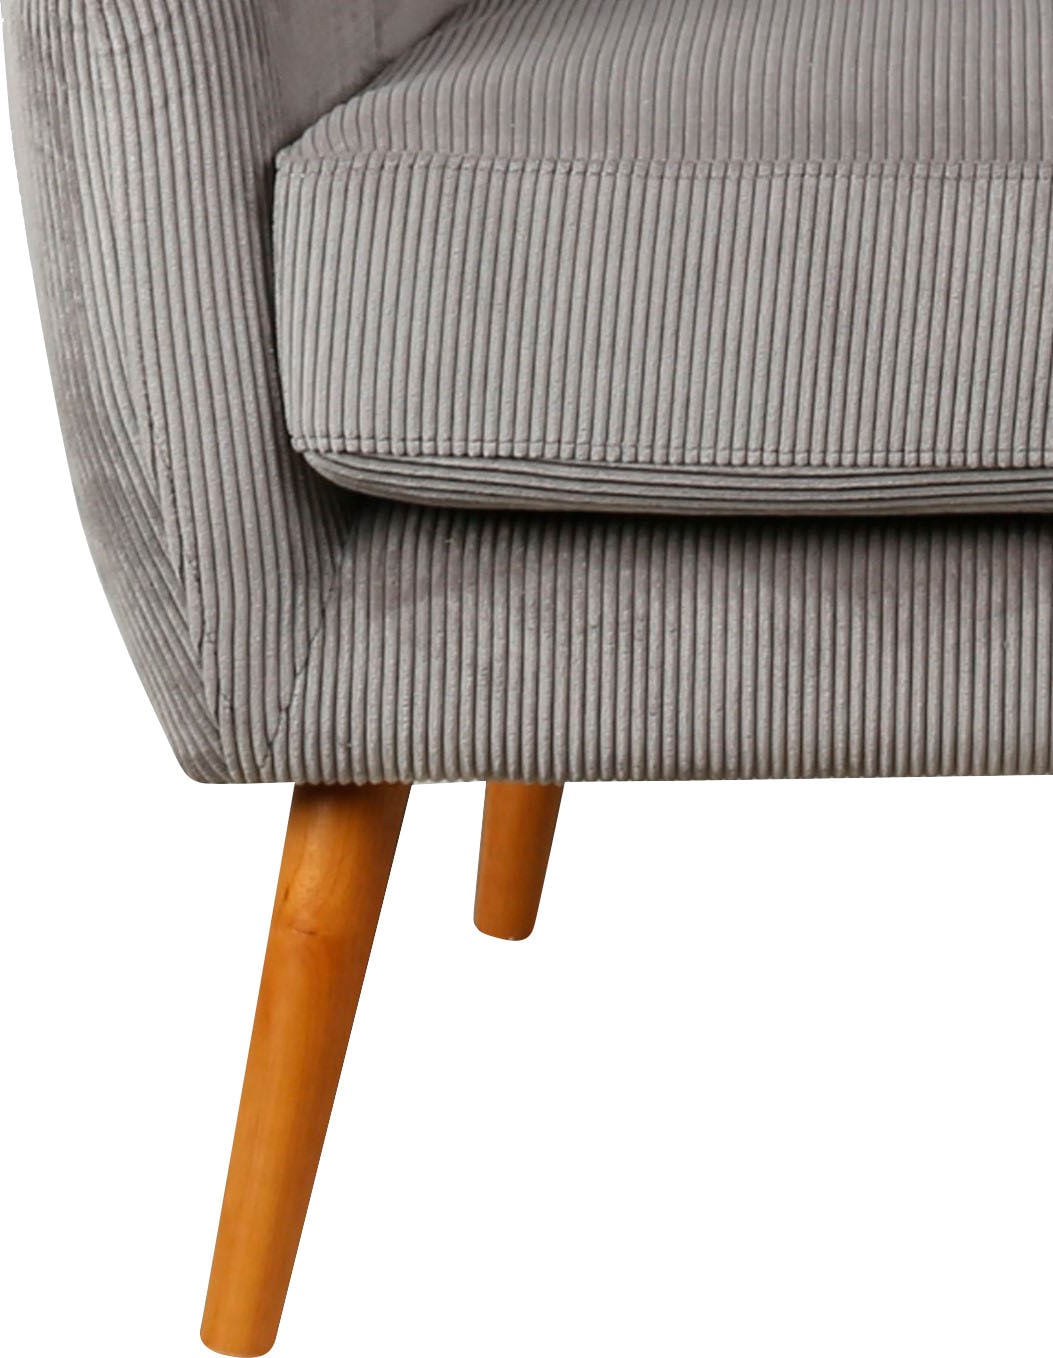 Home affaire Ohrensessel »Yamuna«, mit Sitzpolsterung, Gestell und Füße aus Massivholz, Sitzhöhe 47 cm